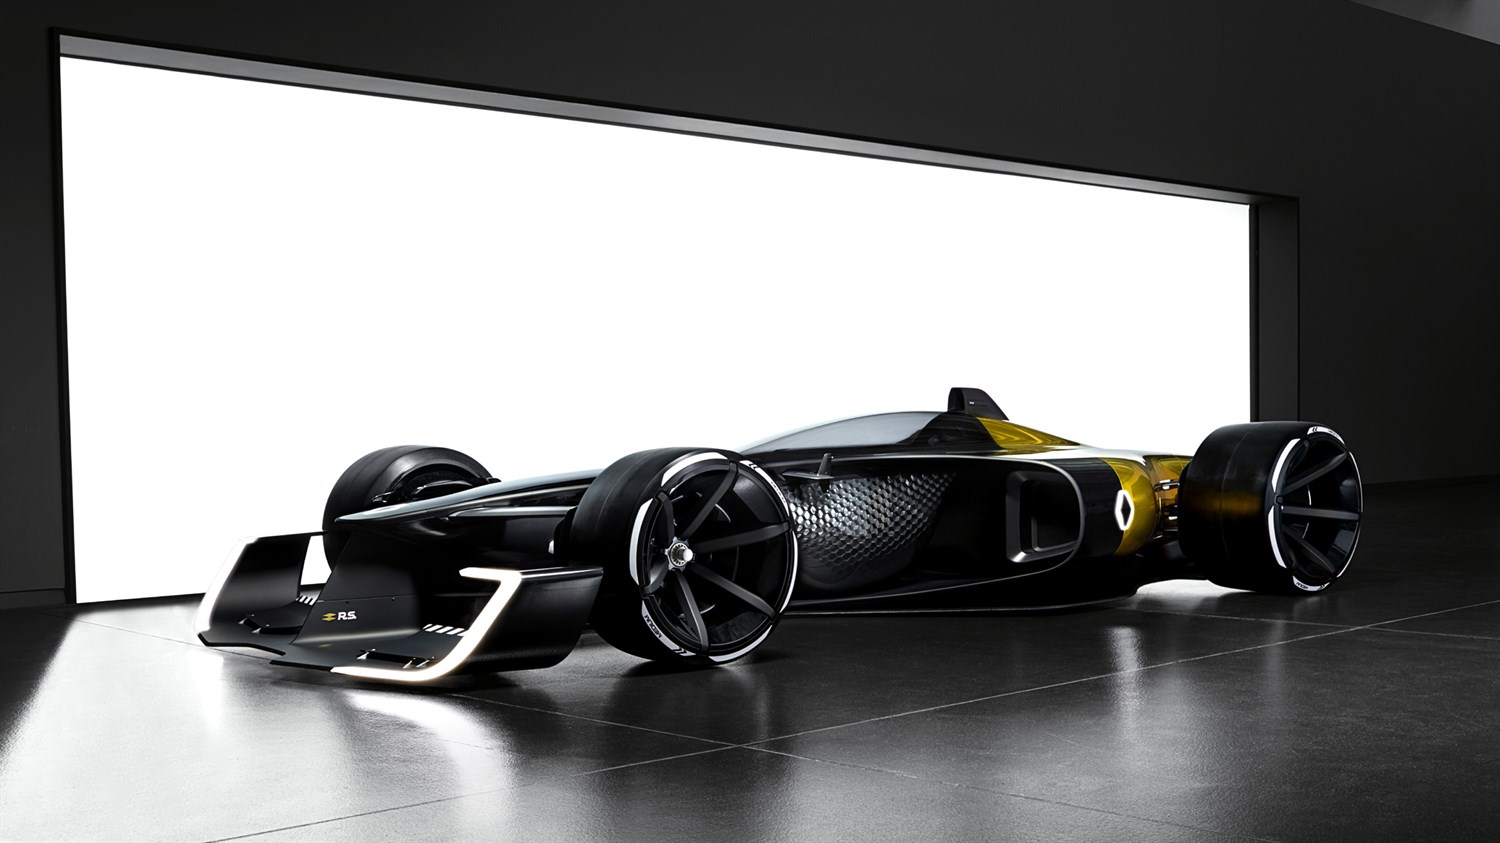 Renault Concept-car - R.S. 2027 Vision Concept dans un garage